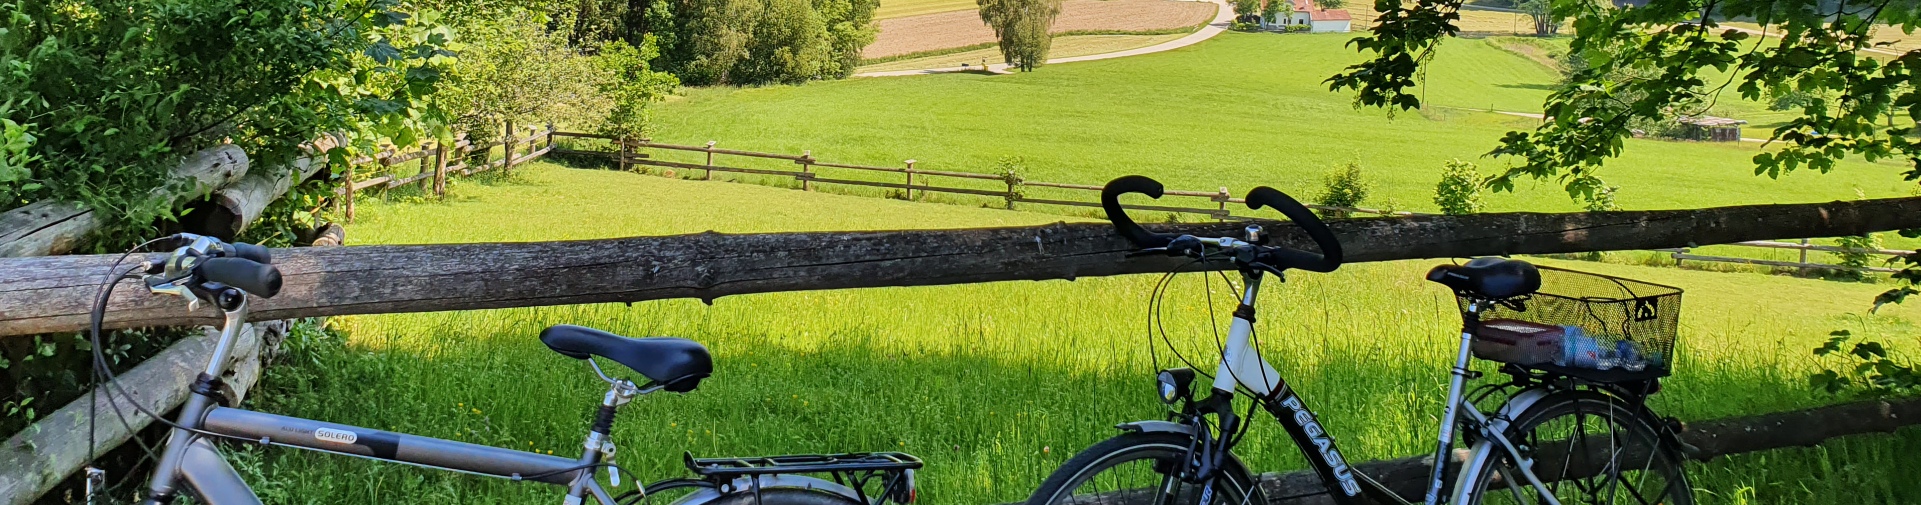 Zwei Fahrräder lehnen an einem Zaun vor einer Weide